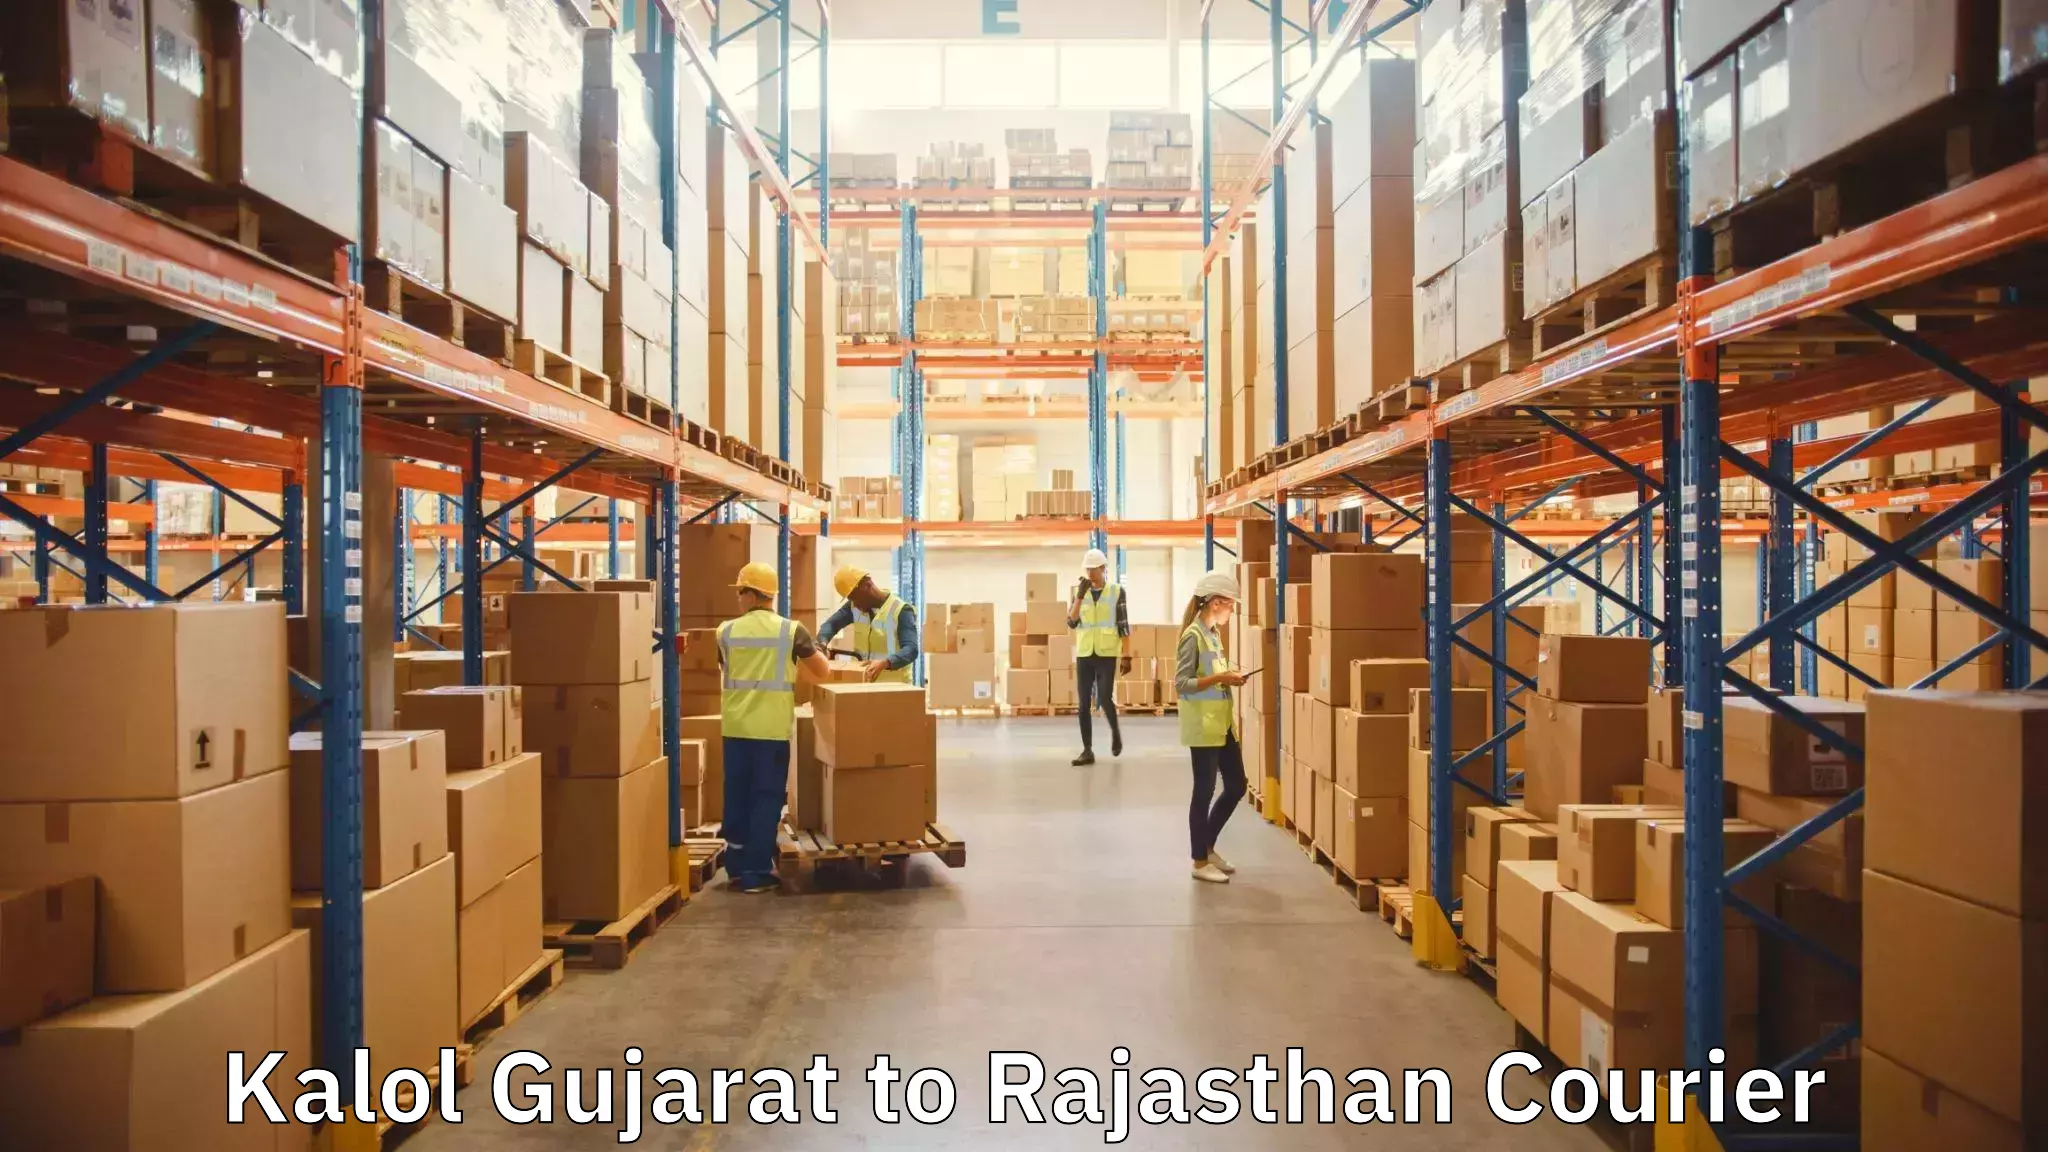 Furniture moving assistance Kalol Gujarat to Sangaria